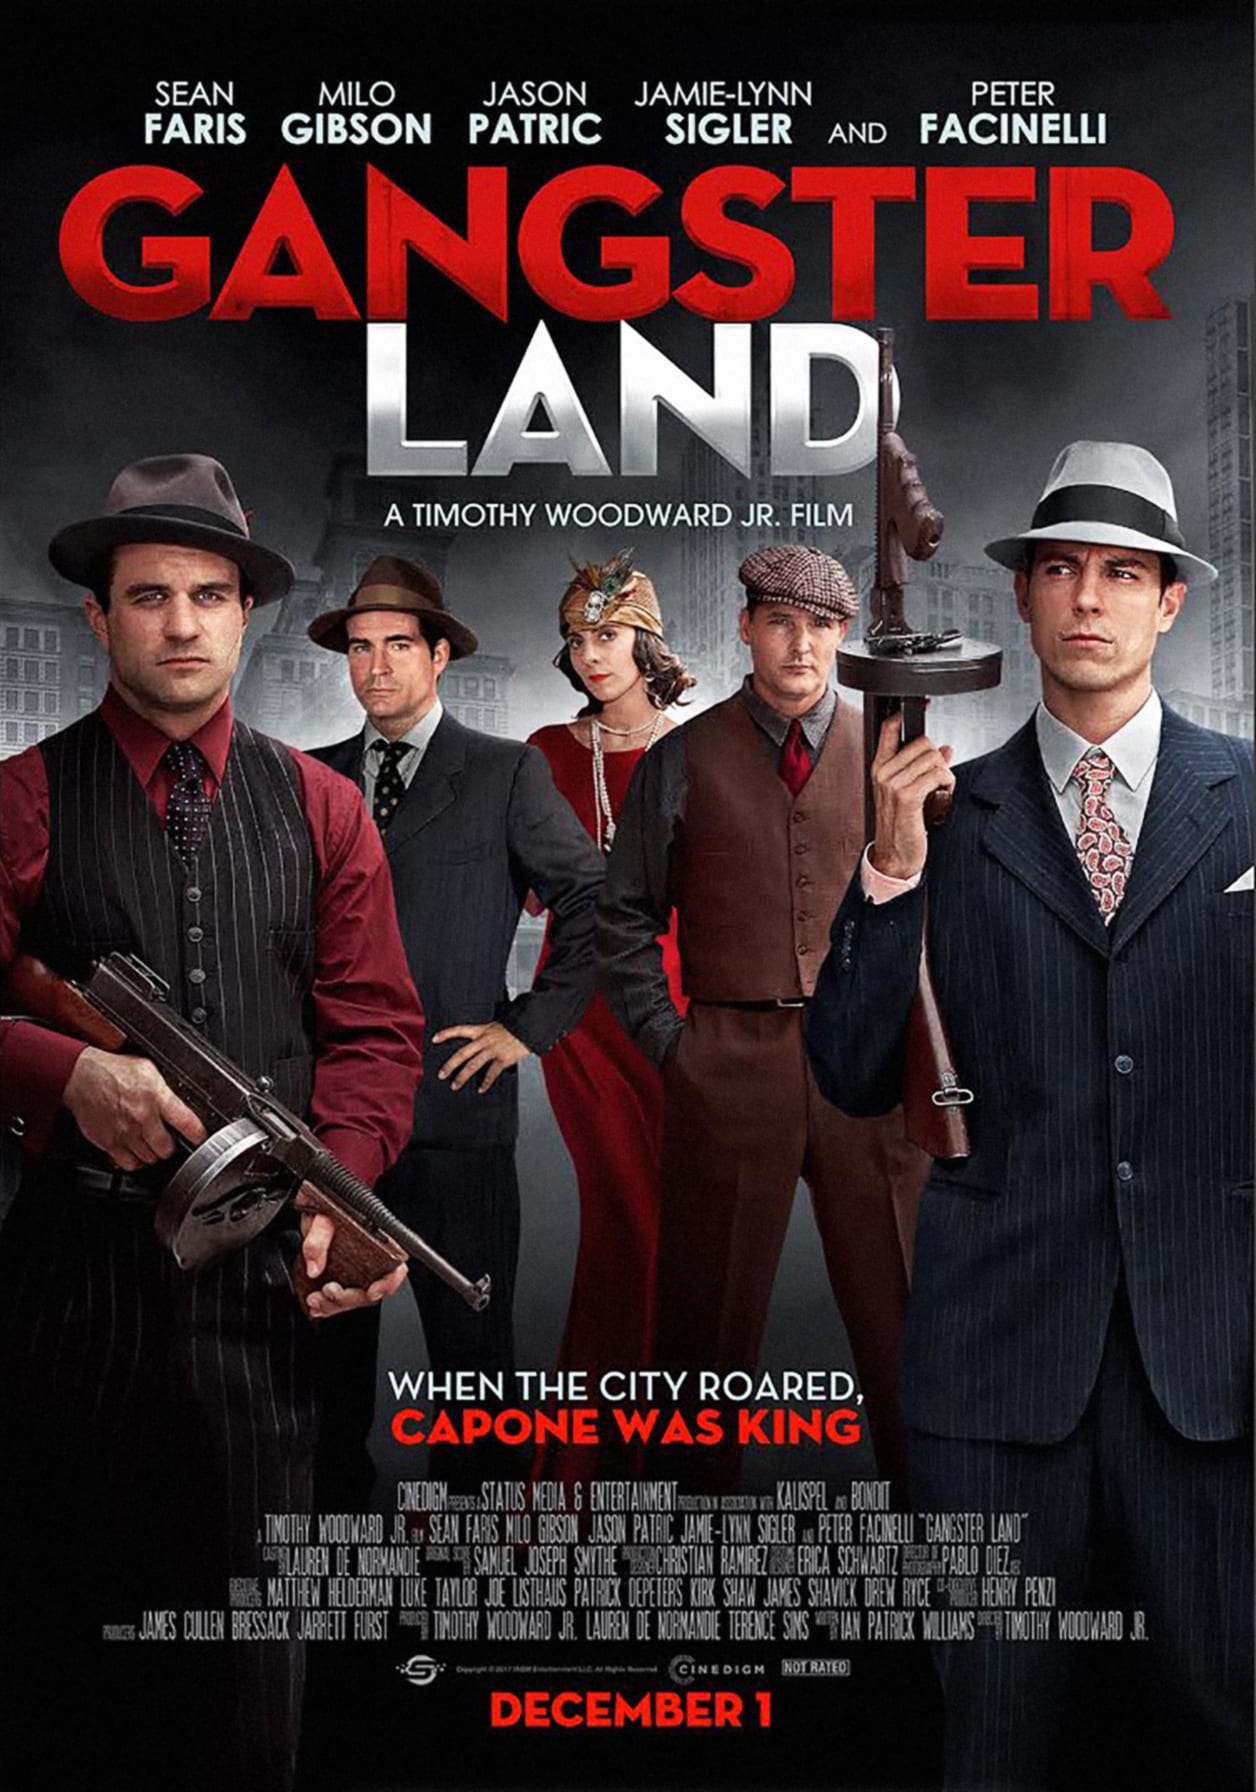 La locandina del film "Gangster Land" del 2017